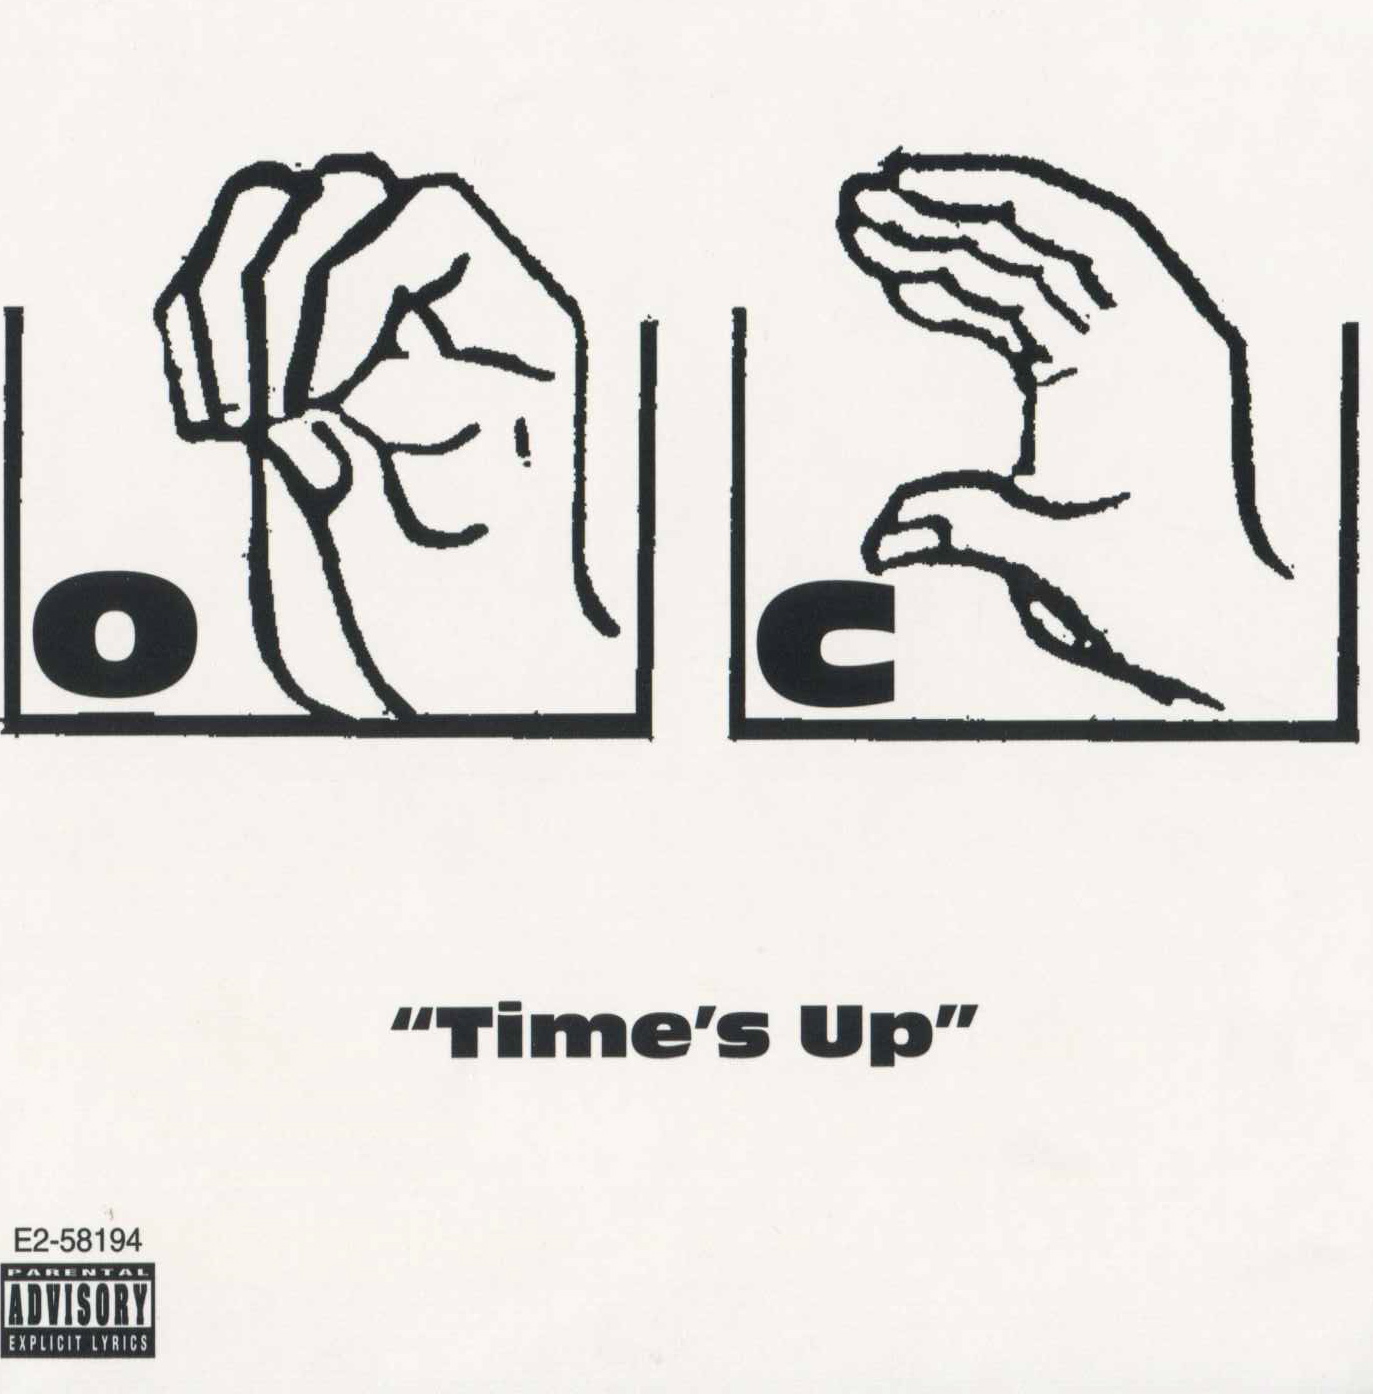 Free MP3: O.C. – Time’s Up (DJ Moneyshot Remix)